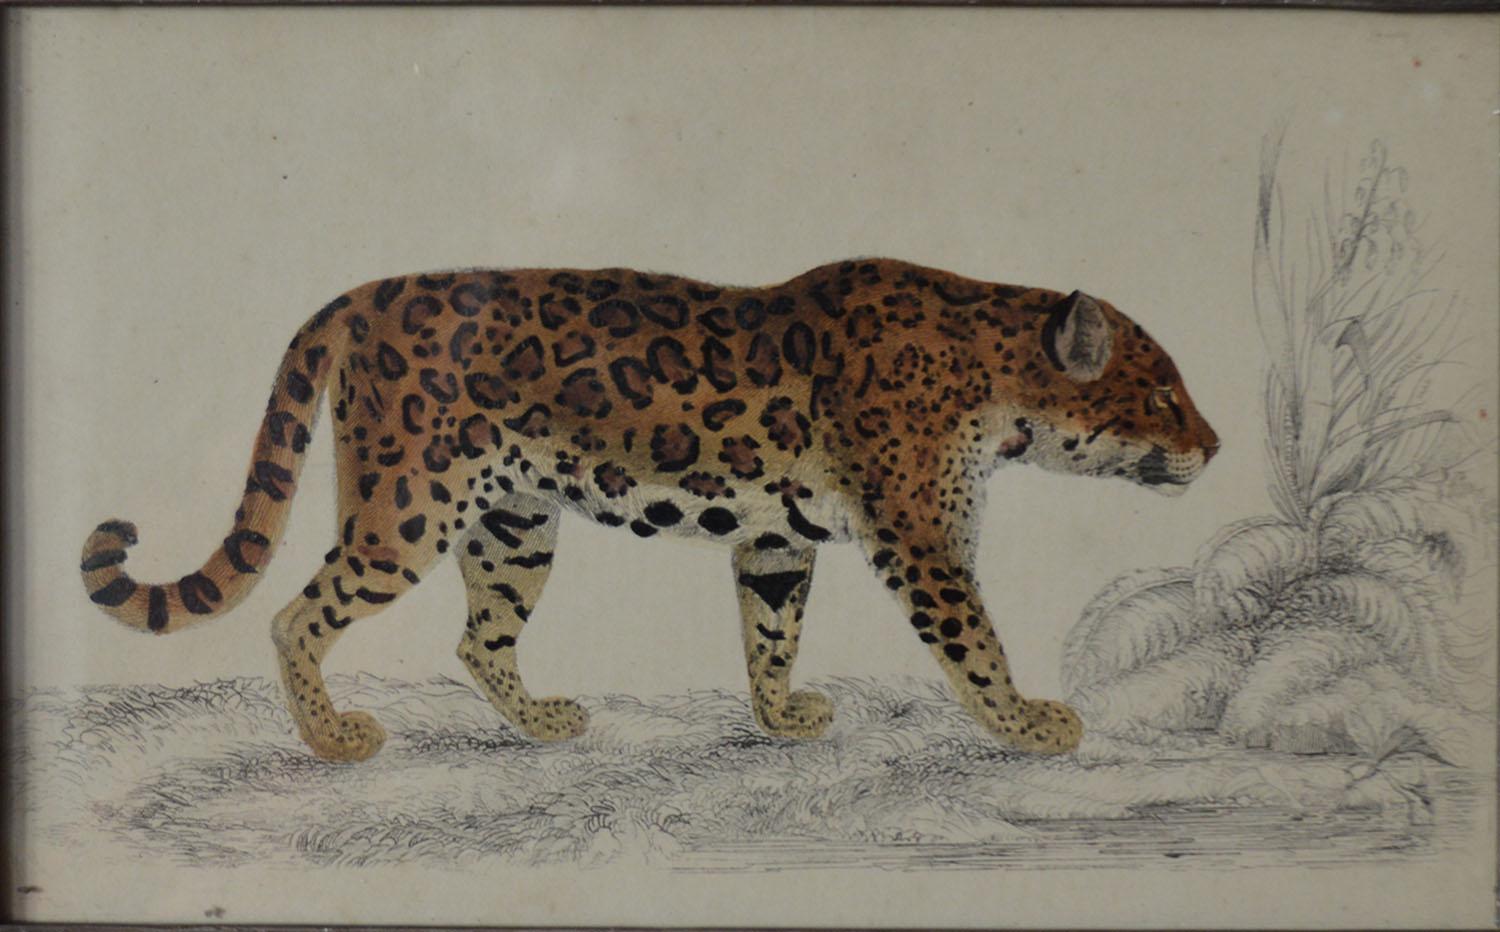 English Original Antique Print of a Jaguar, 1847